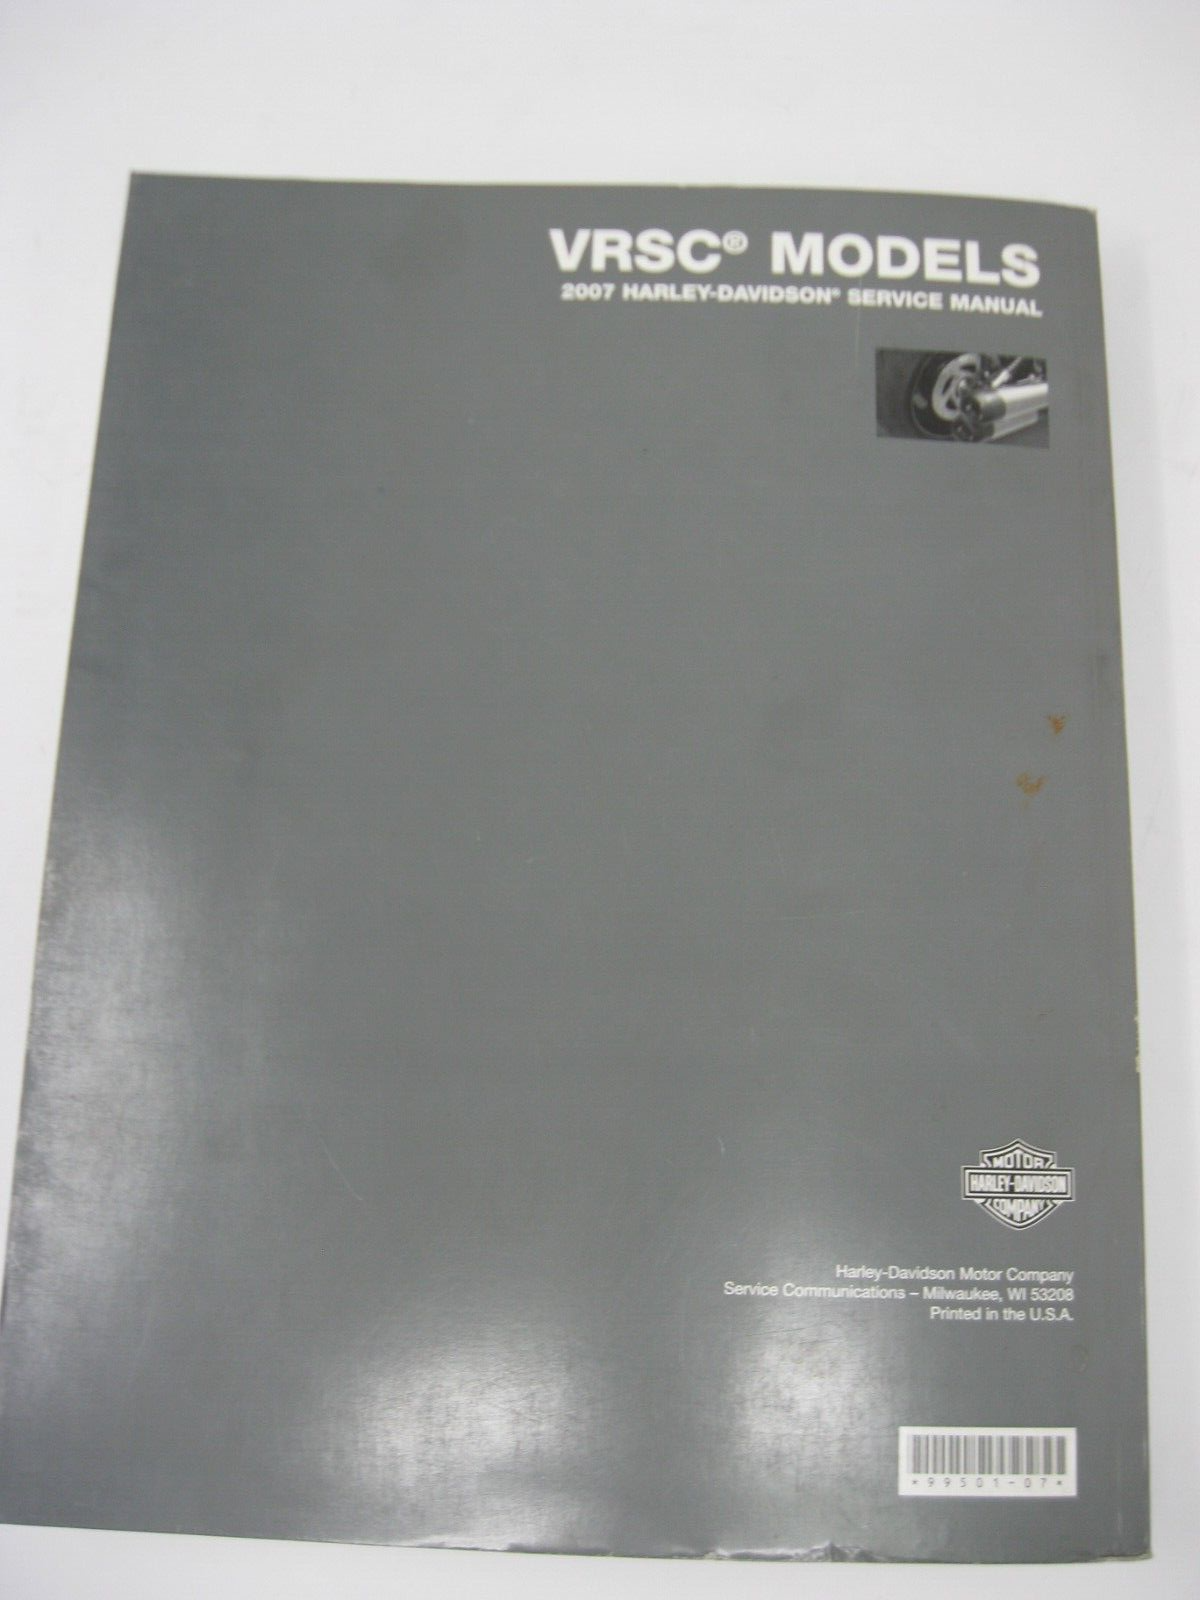 Harley-Davidson VRSC Models 2007 Service Manual 99501-07